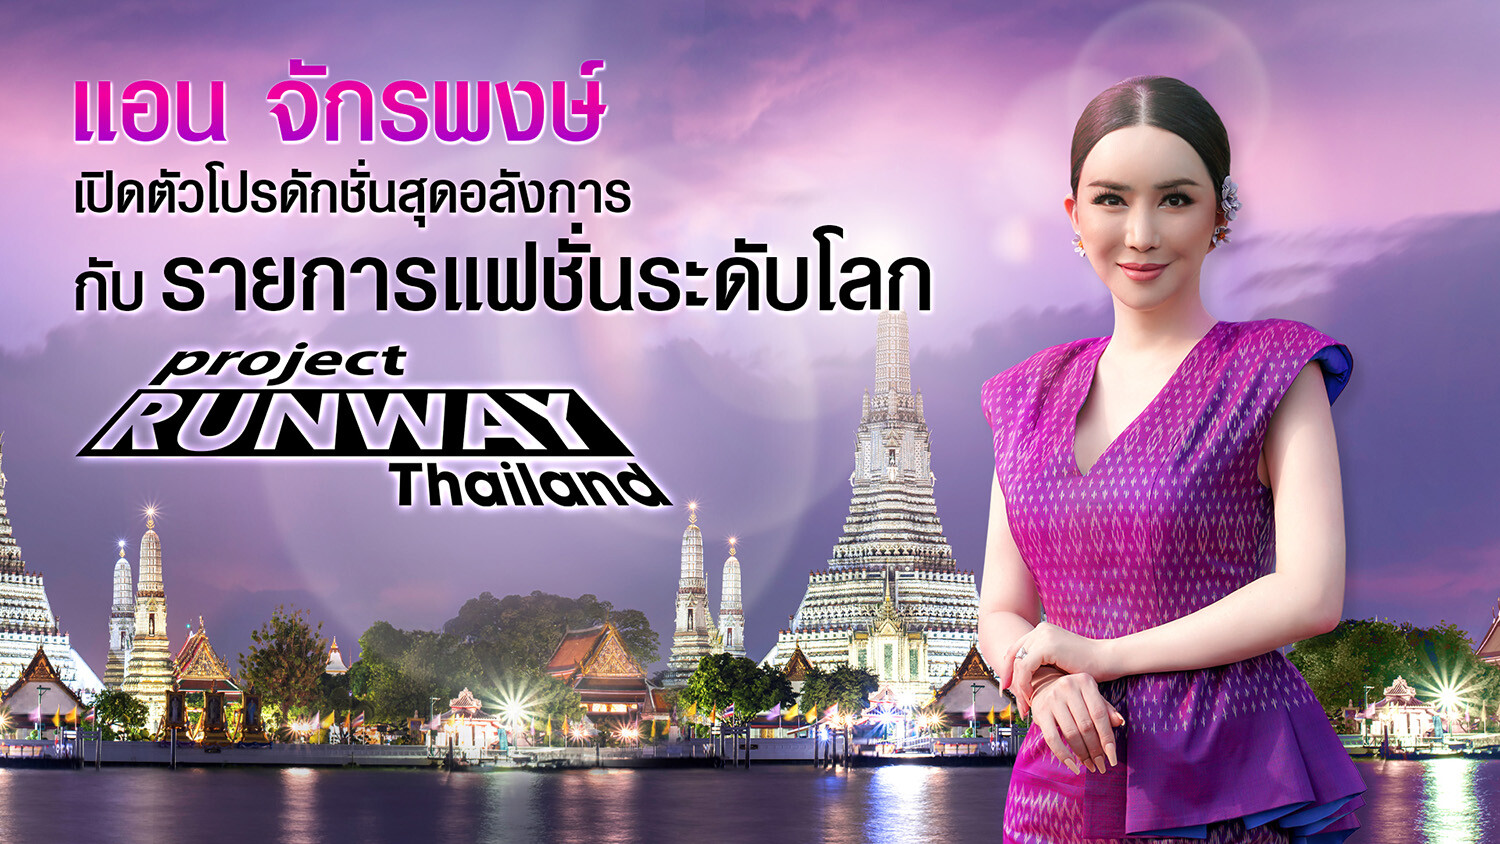 แอน จักรพงษ์ รับบทพิธีกรรายการแฟชั่นระดับโลก "Project Runway Thailand" ยอมรับตื่นเต้นและทุ่มทุนสร้างโปรดักชั่นอลังการ